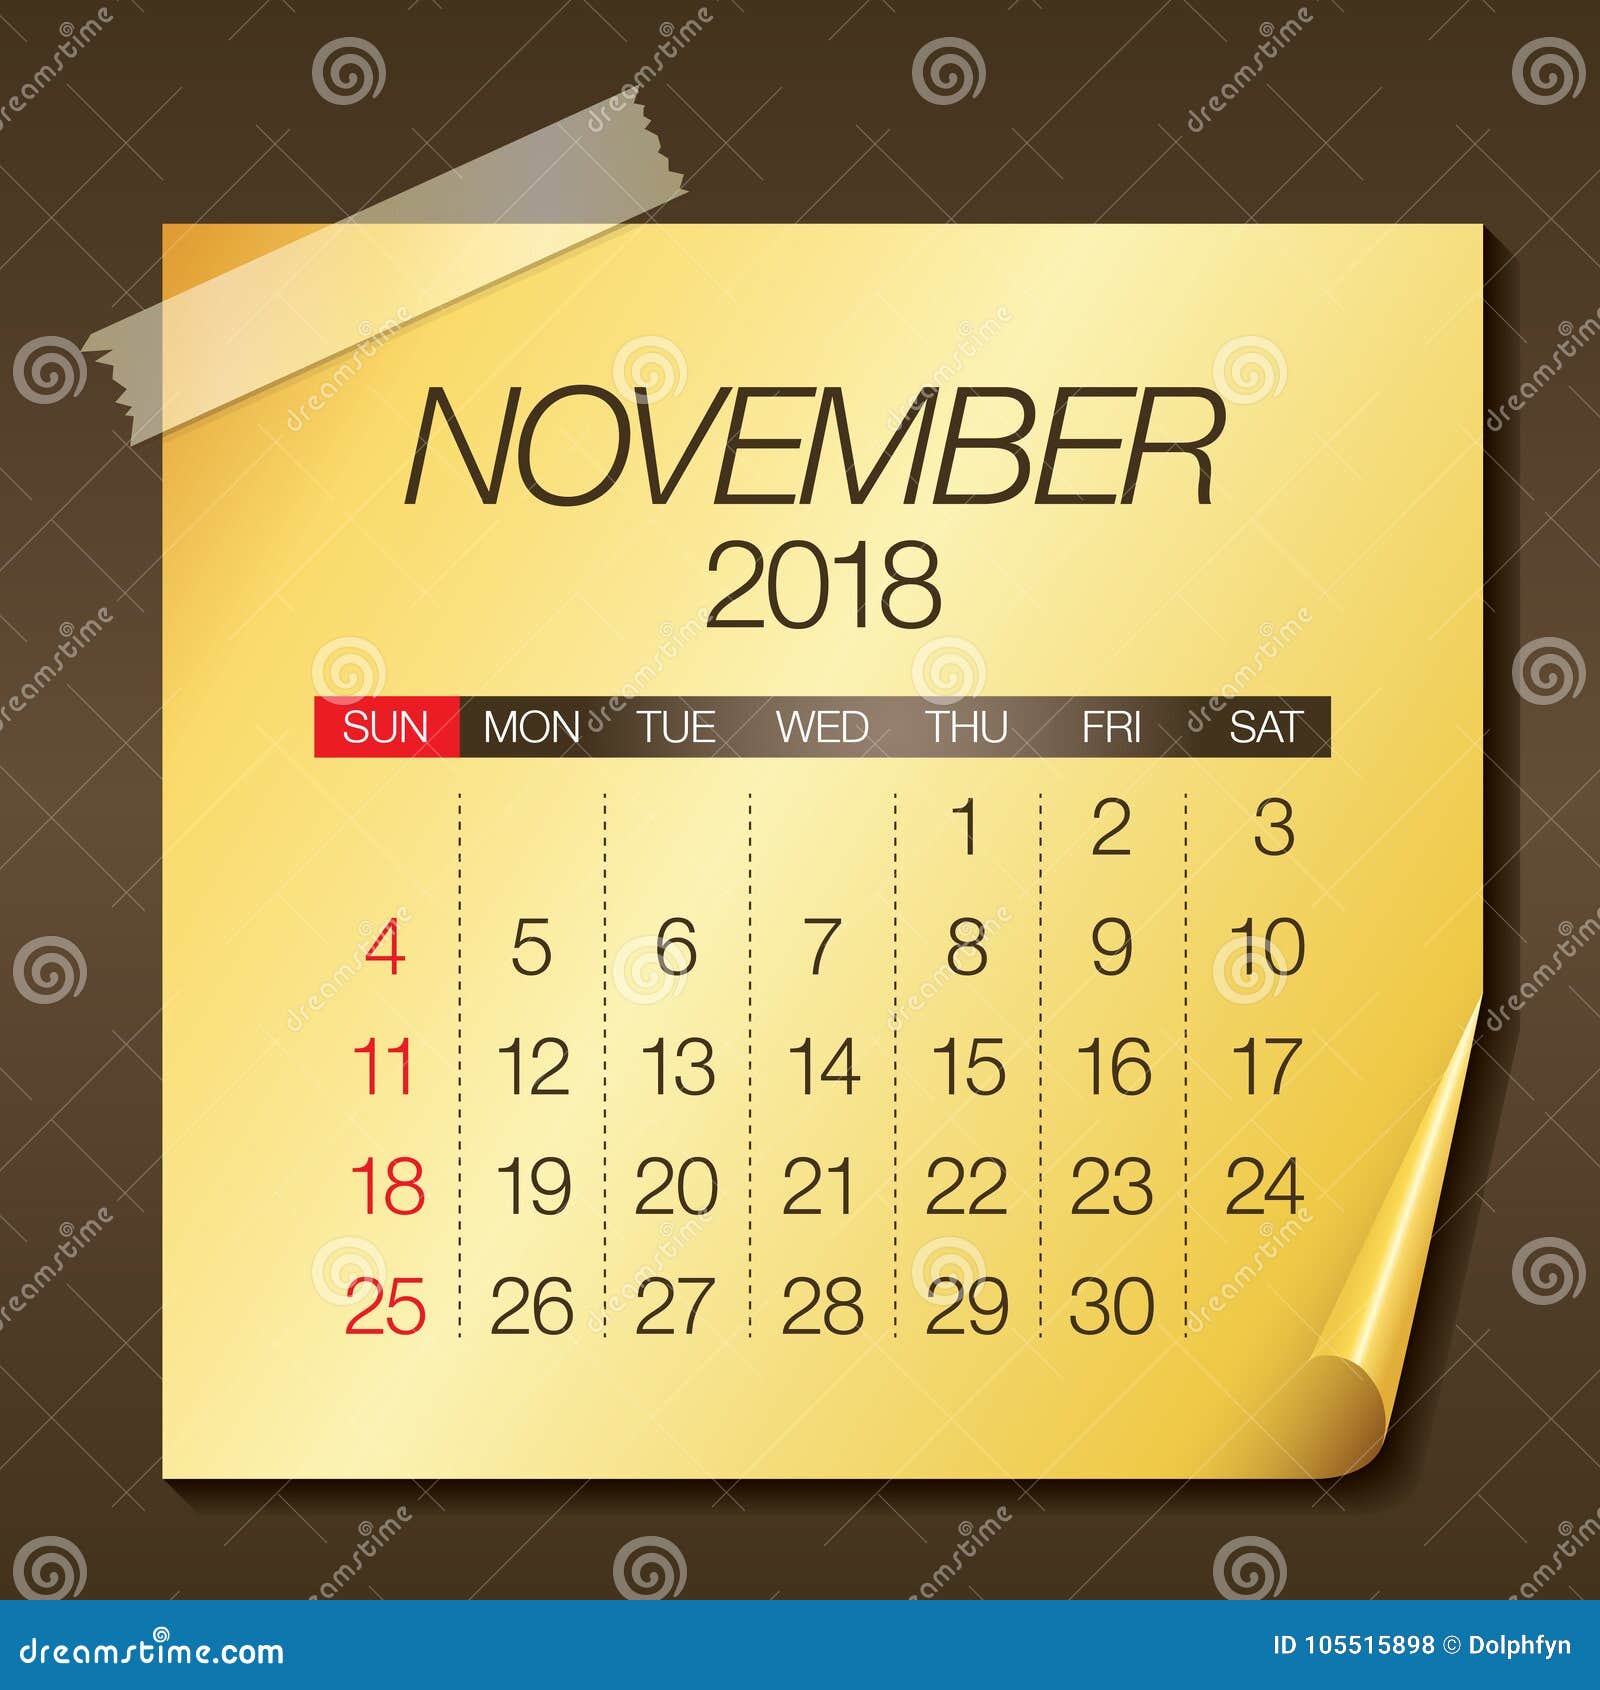 november-2018-calendar-vector-illustration-stock-vector-illustration